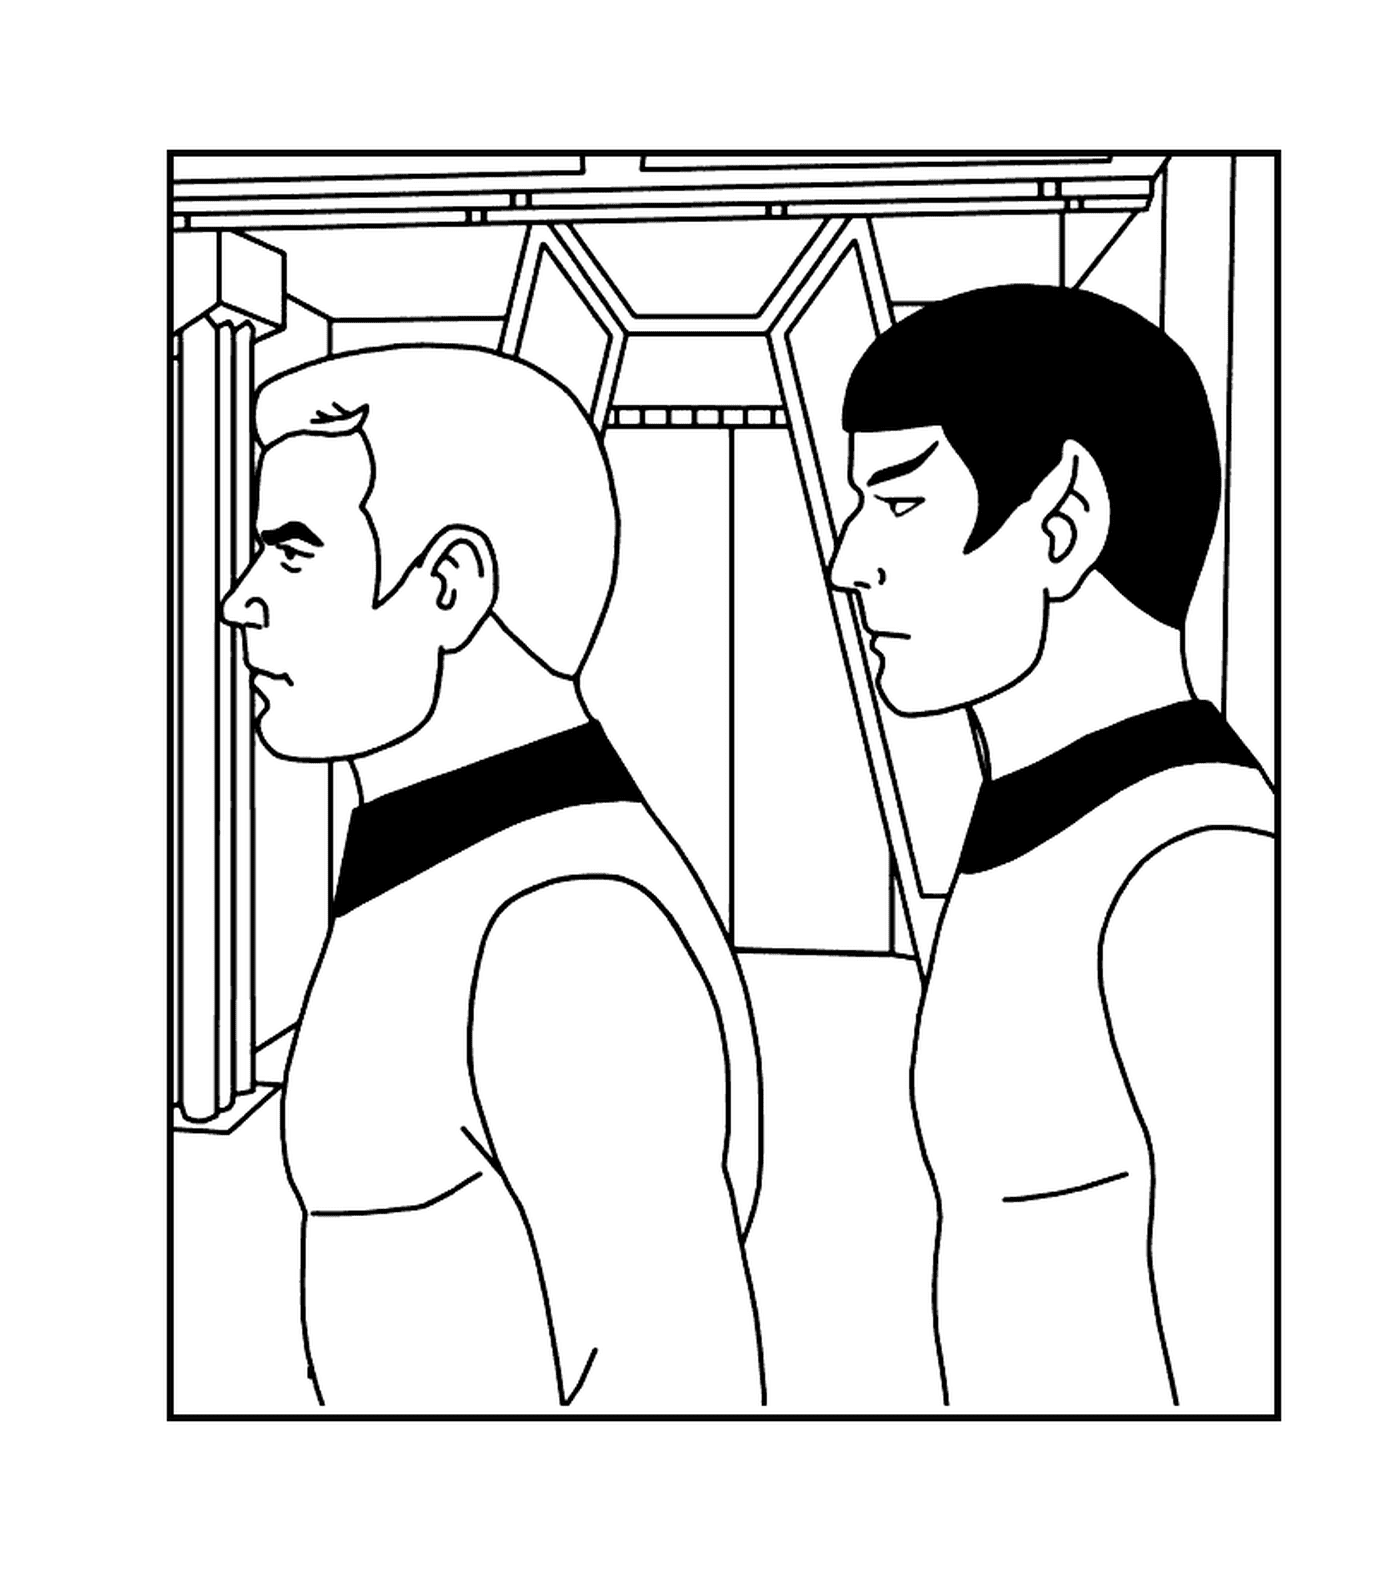   Spock et Kirk de Star Trek 